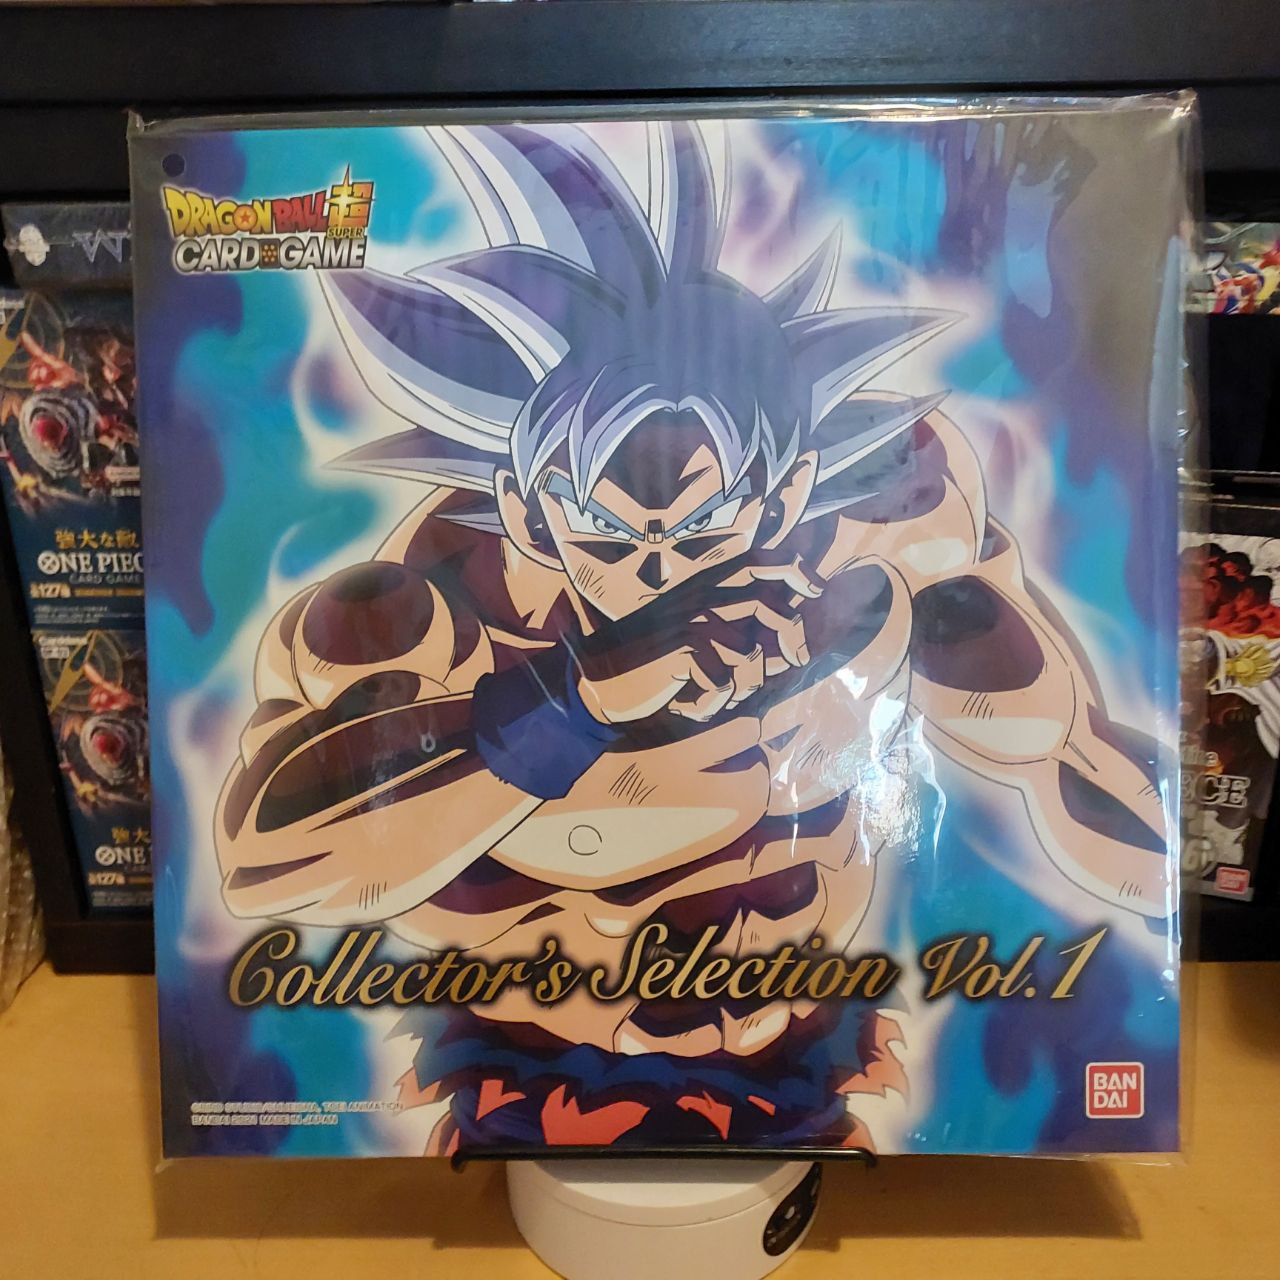 Dragon Ball Super Collector's Selection Vol.1